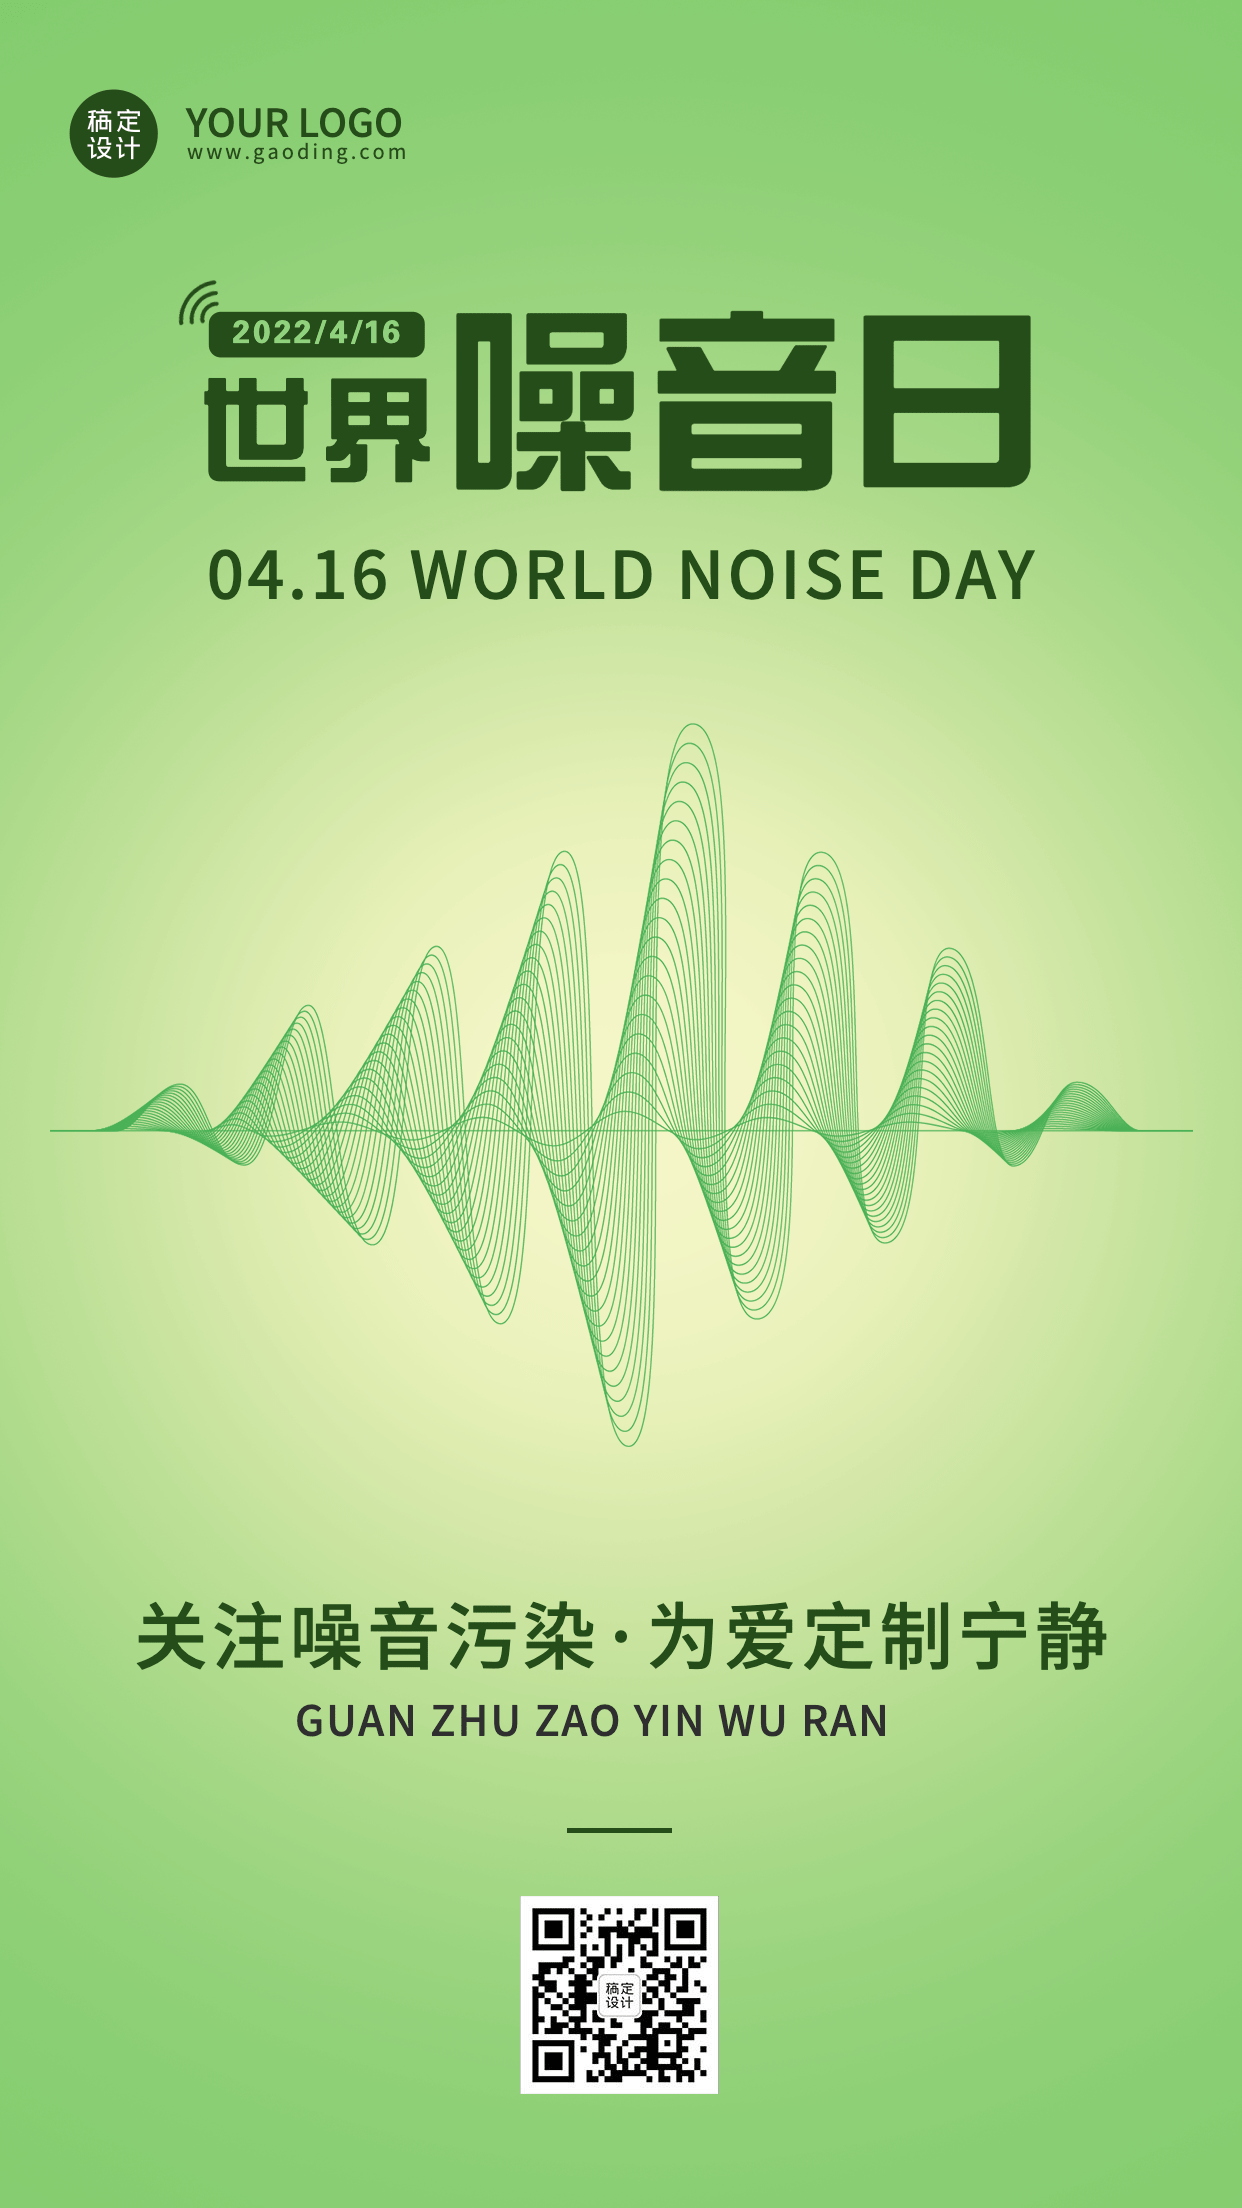 世界噪音日节日宣传排版手机海报预览效果